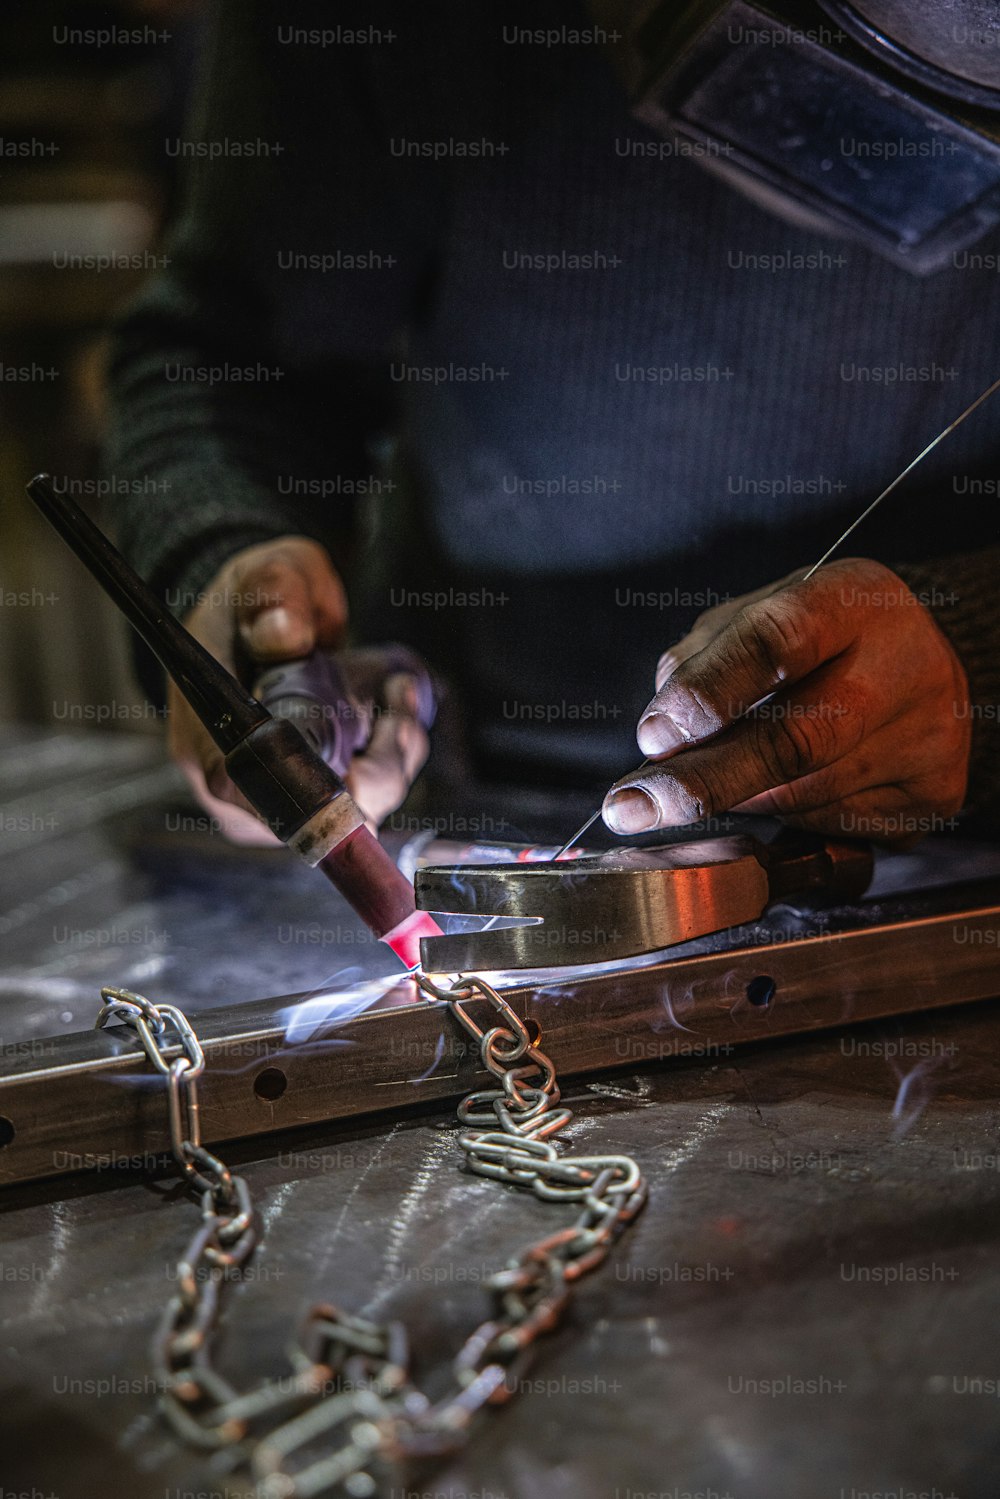 une personne travaillant sur une pièce de métal